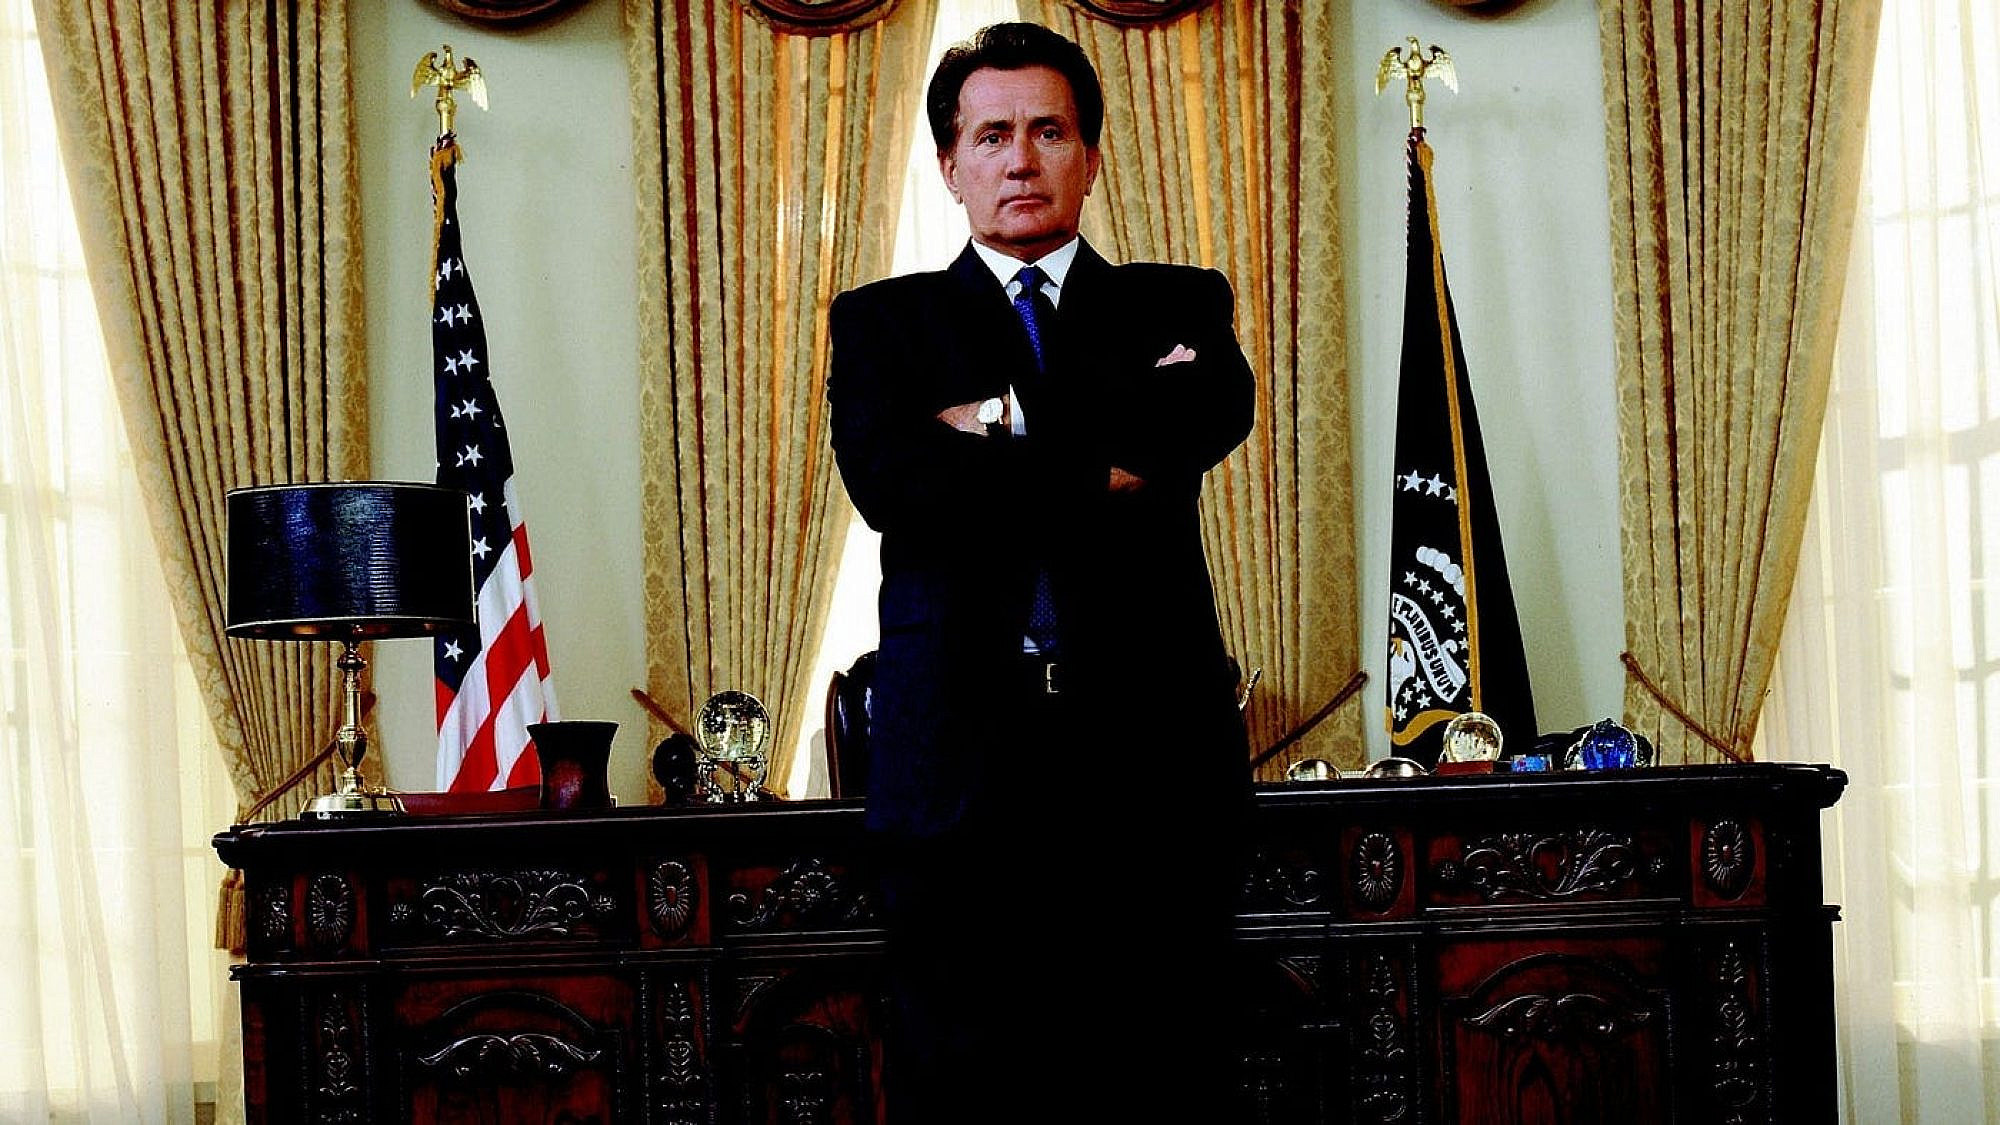 מרטין שין בתפקיד הנשיא ברטלט, "הבית הלבן" (צילום: יחסי ציבור)